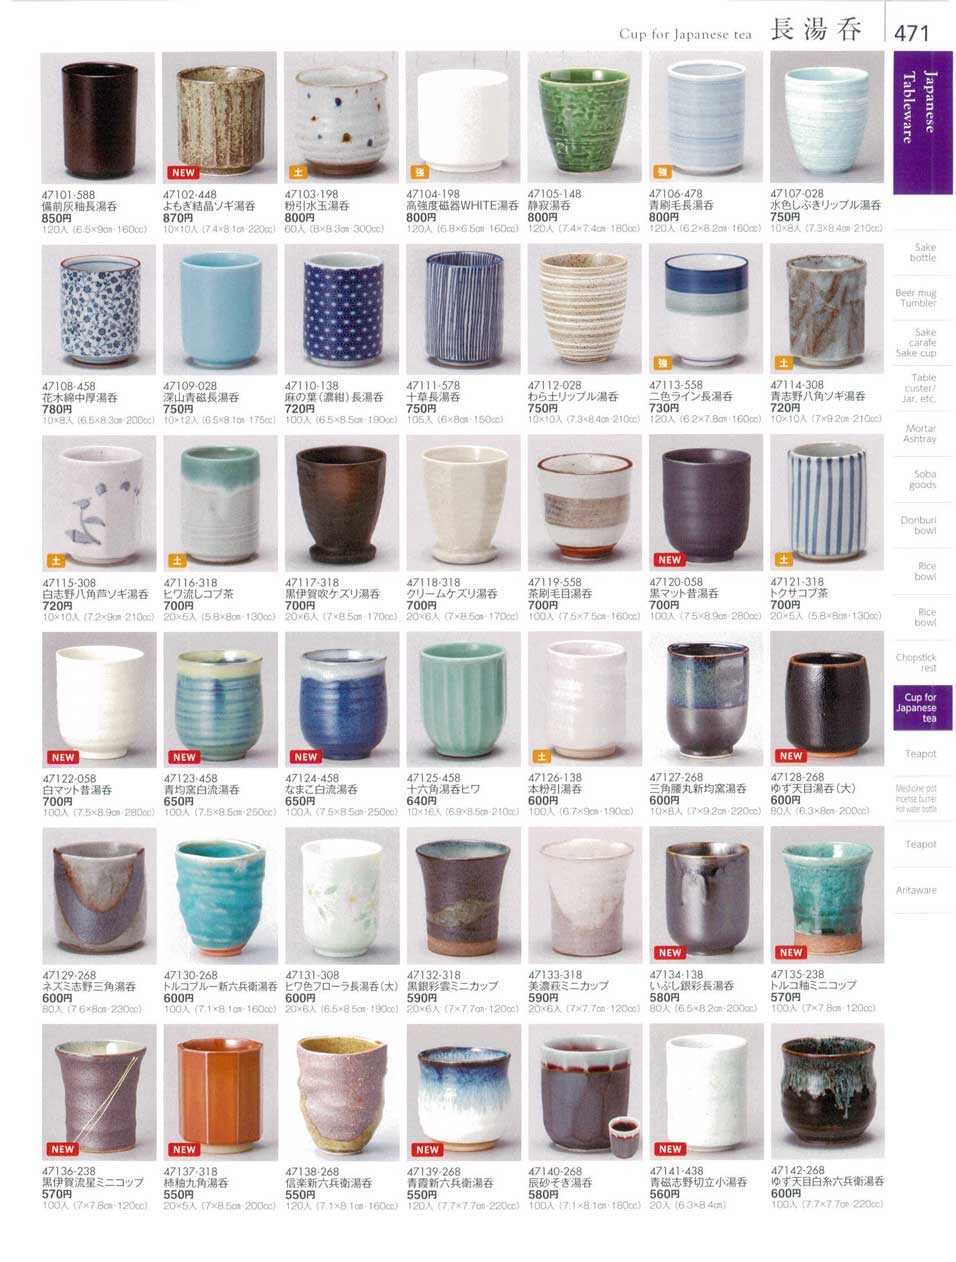 食器 長湯呑Cup for Japanese tea 陶雅１８－471ページ